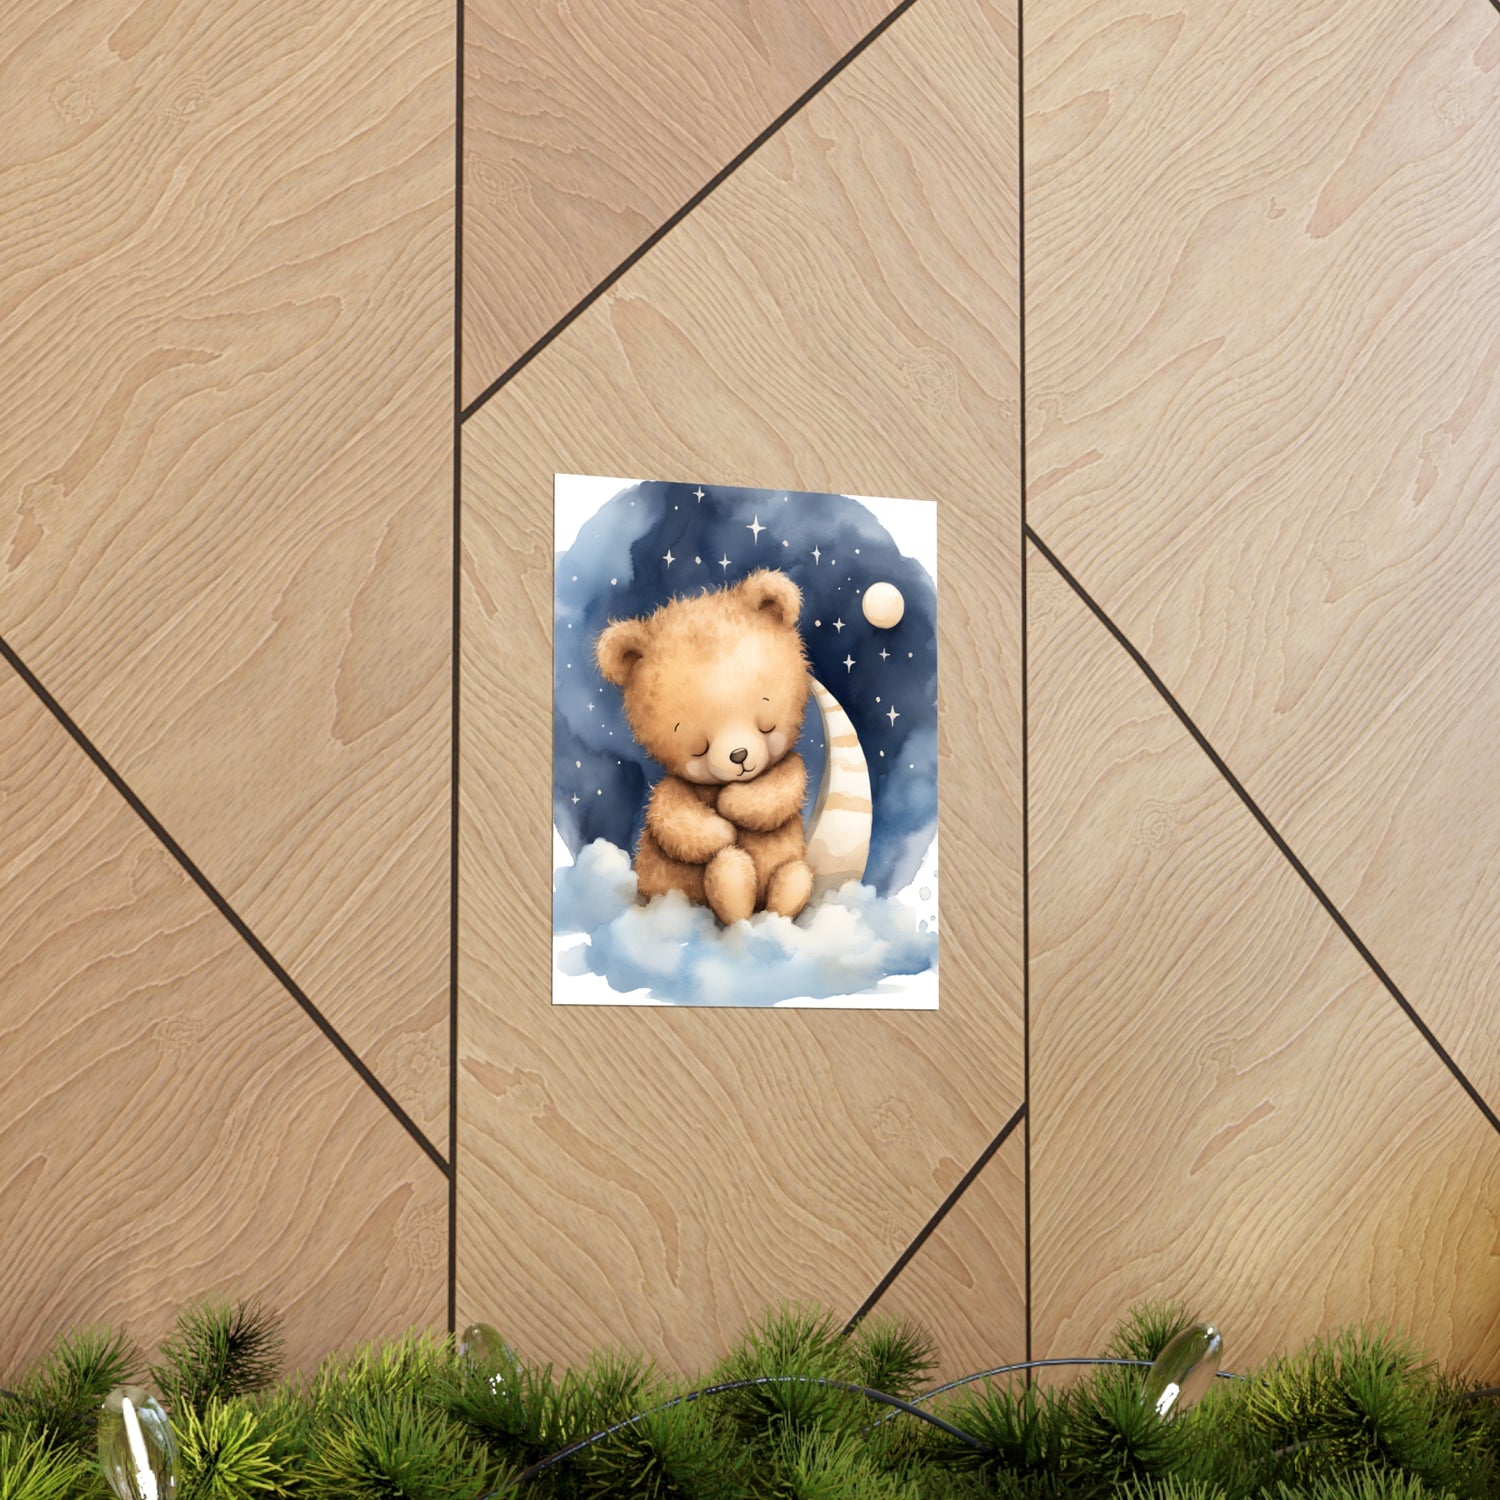 Sleeping Bear, Baby Room Wall Art, Nursery Decor, Bear Nursery Decor, sleeping animals, Animals Nursery Art, Nursery Décor,Teddy Bear Print - CosmicDeva